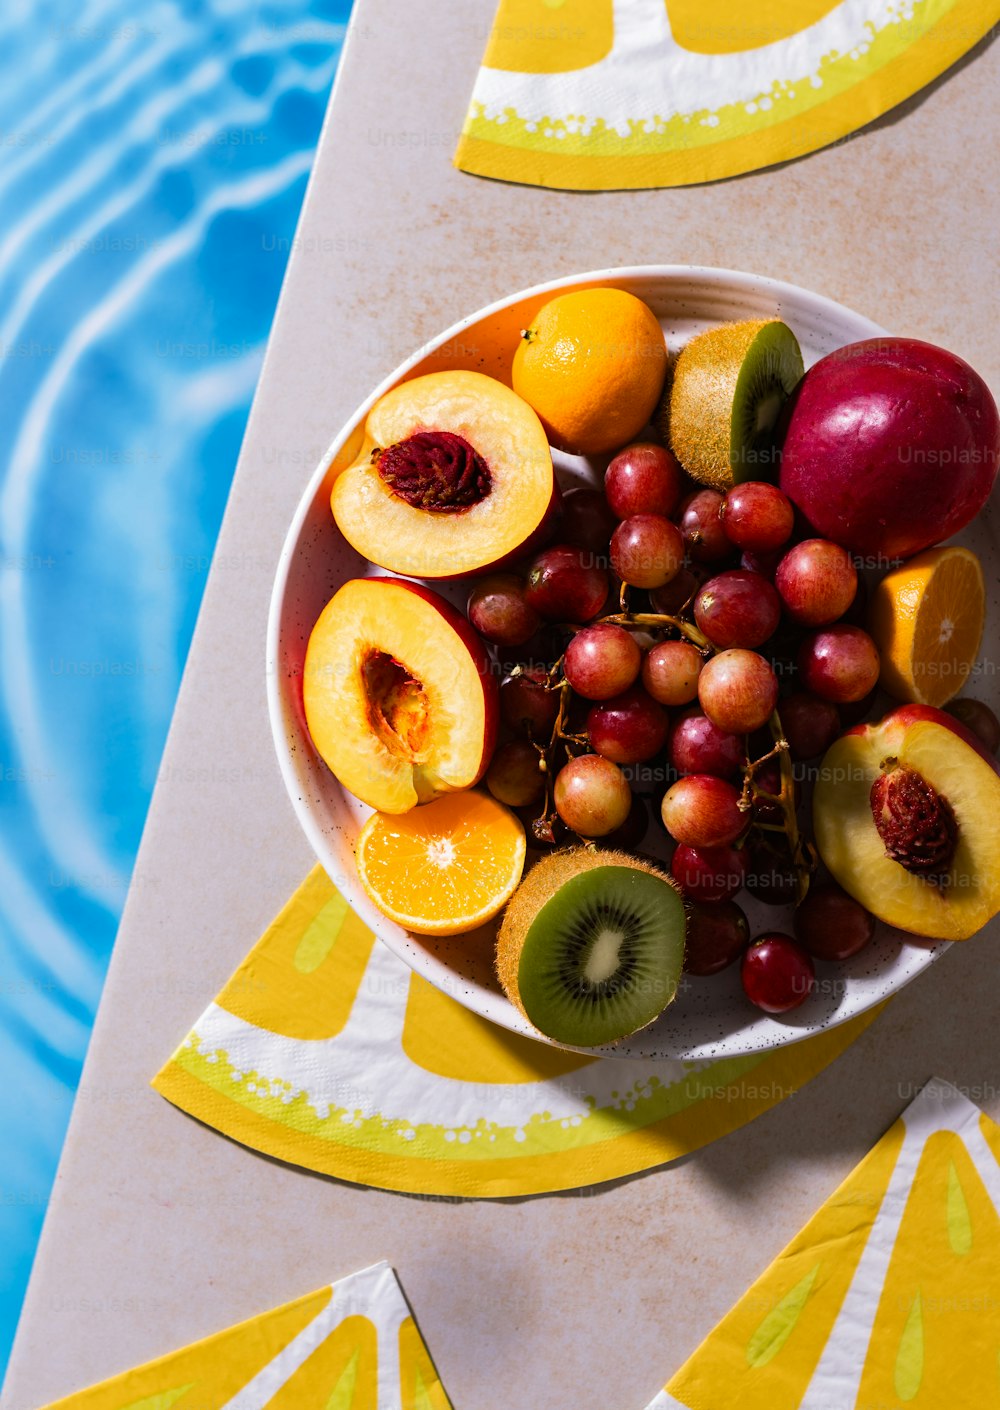 수영장 옆 테이블 위에 앉아 있는 과일 한 그릇